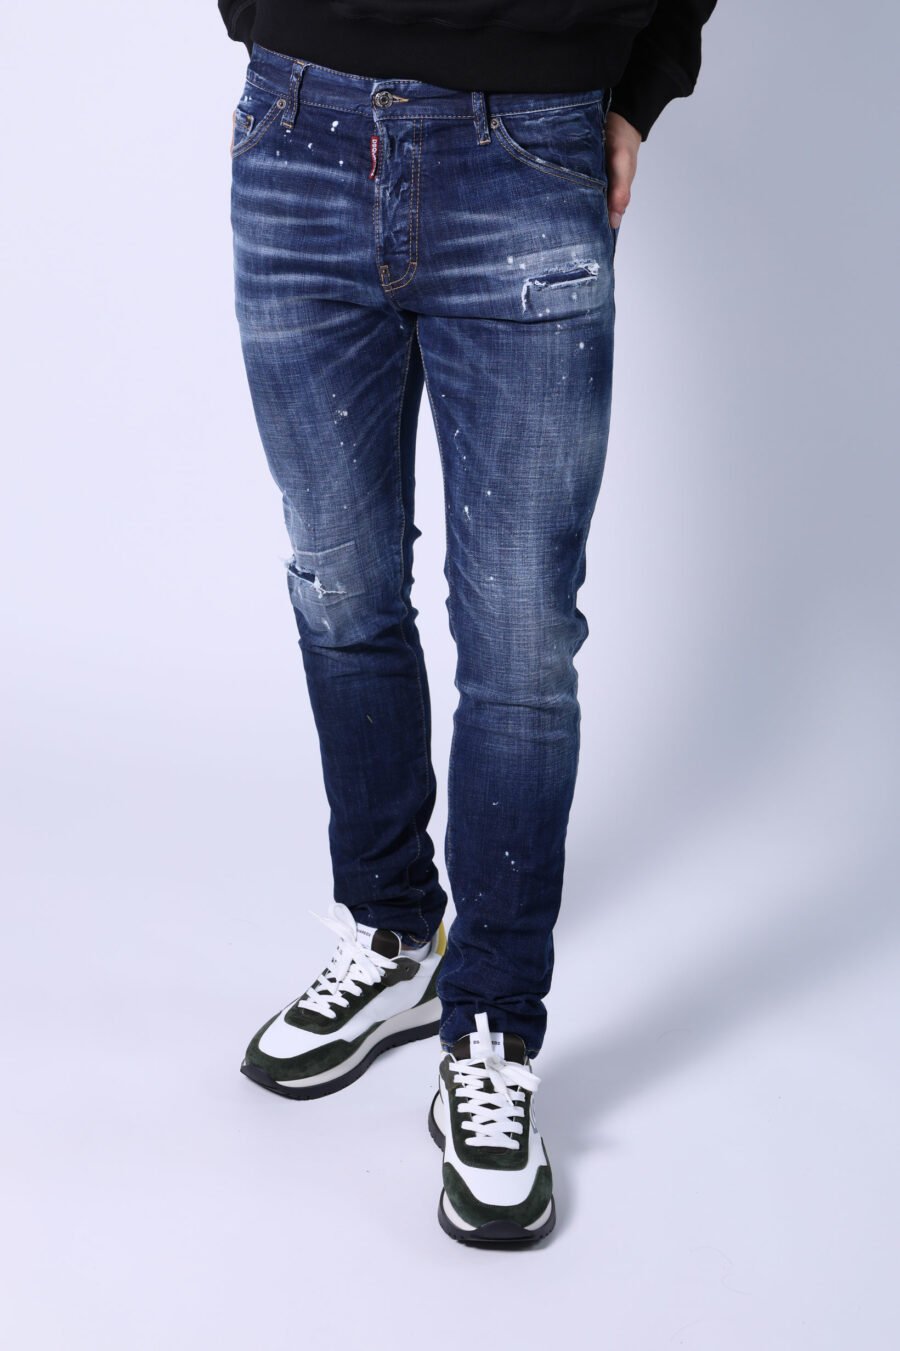 Blaue "cool guy jean" Jeans mit Farbe und ausgefranst - Ohne Titel Katalog 05412